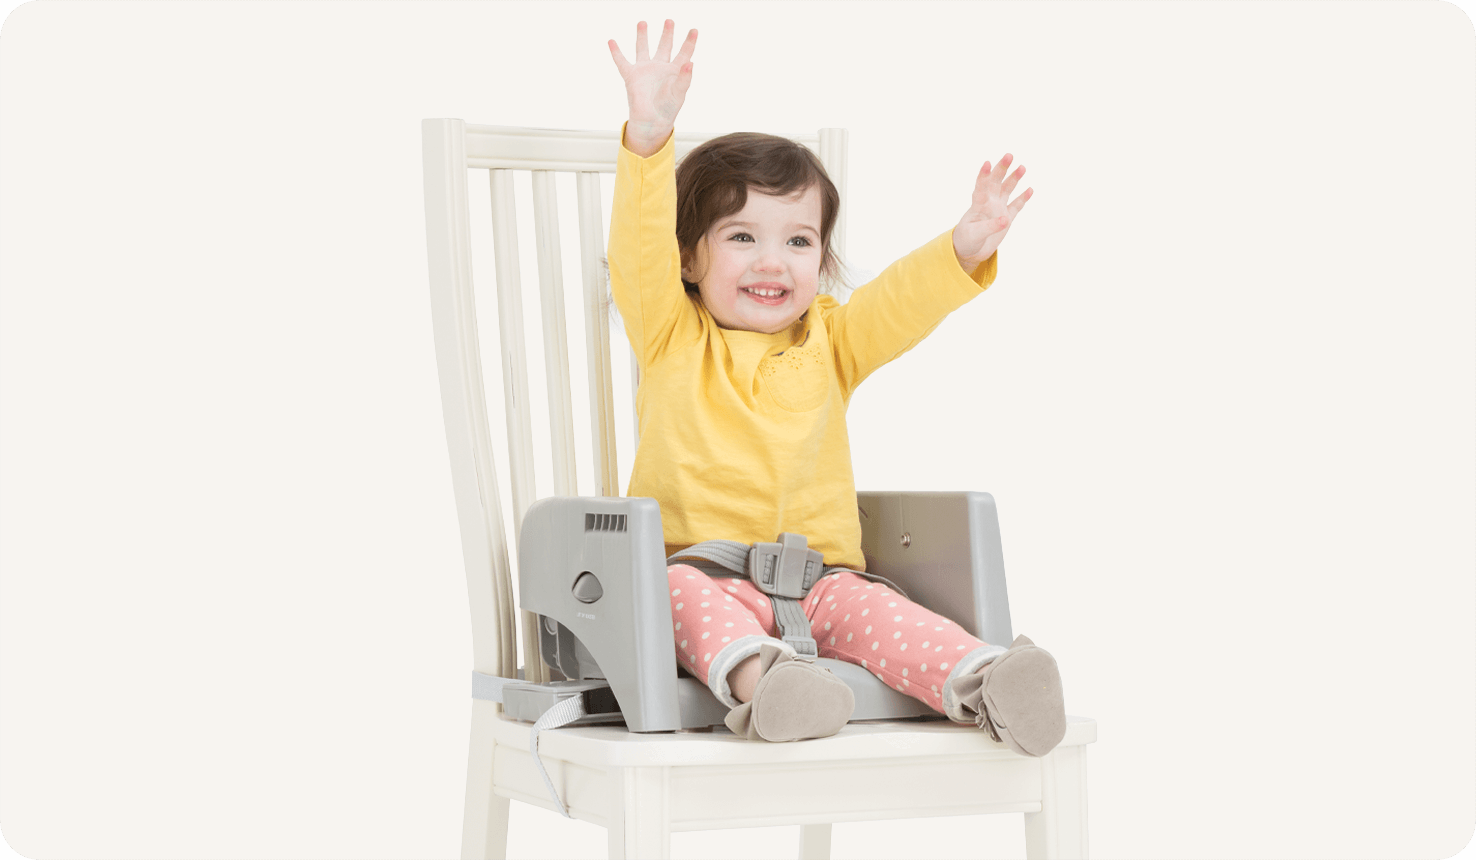  Enfant assis dans un rehausseur gris faisant partie de la chaise haute multiply sur une chaise blanche. 